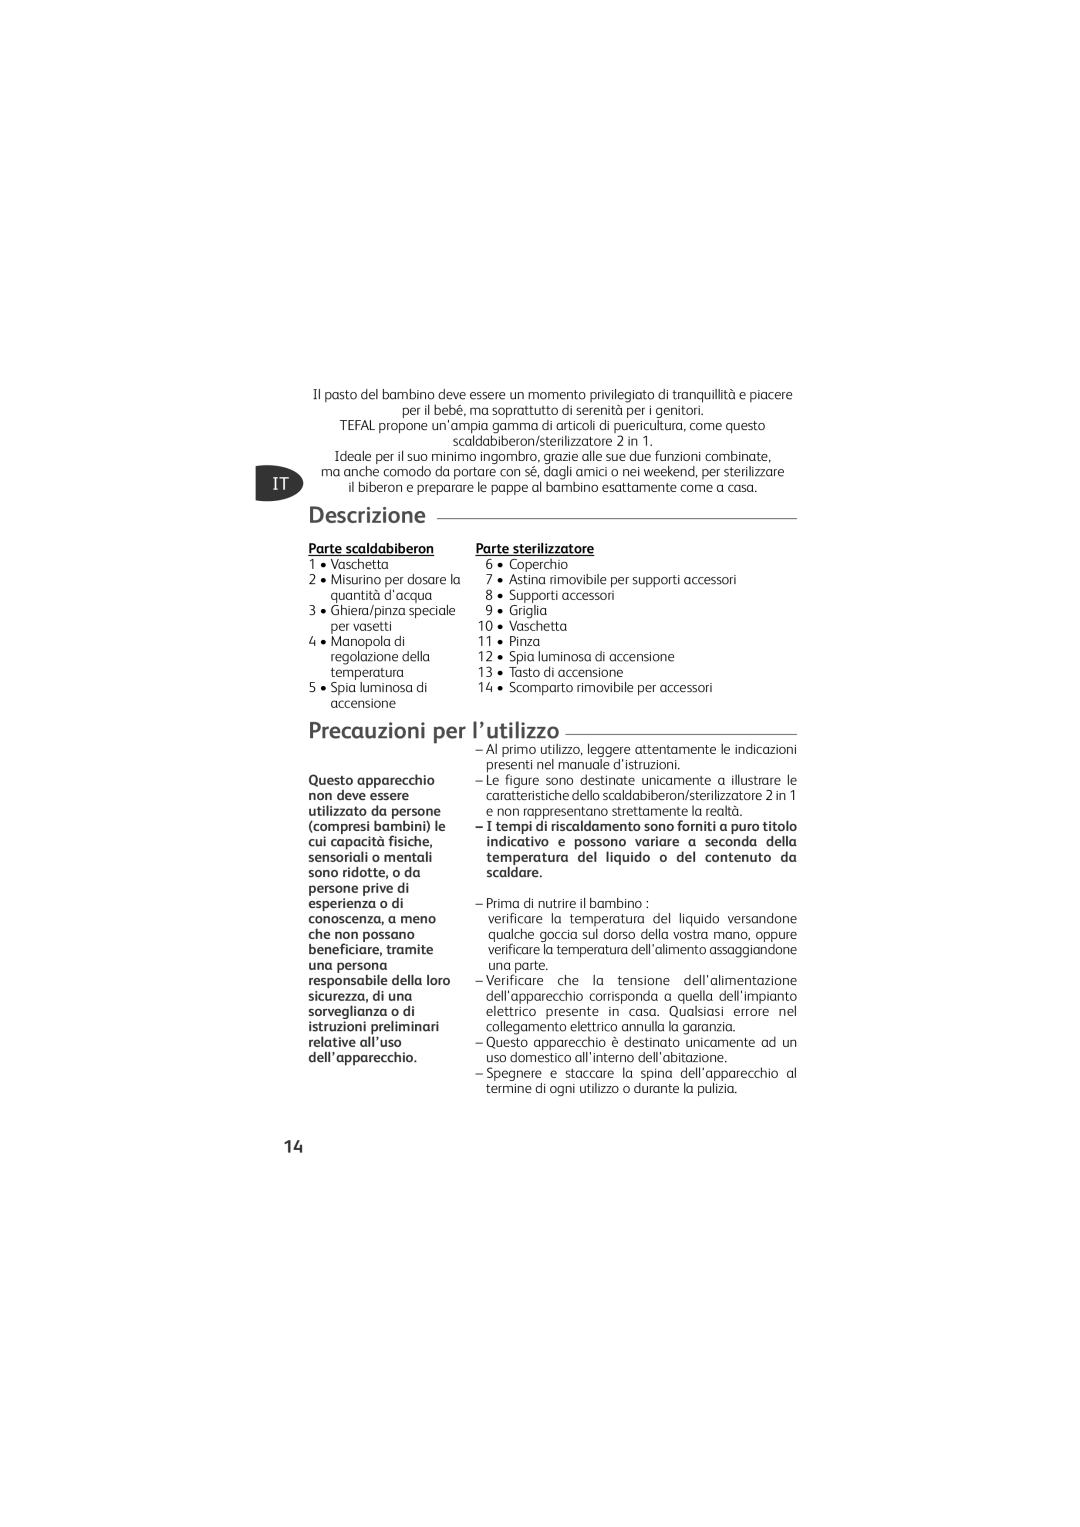 Tefal TD4200K0 manual Descrizione, Precauzioni per l’utilizzo, Parte scaldabiberon, Parte sterilizzatore 